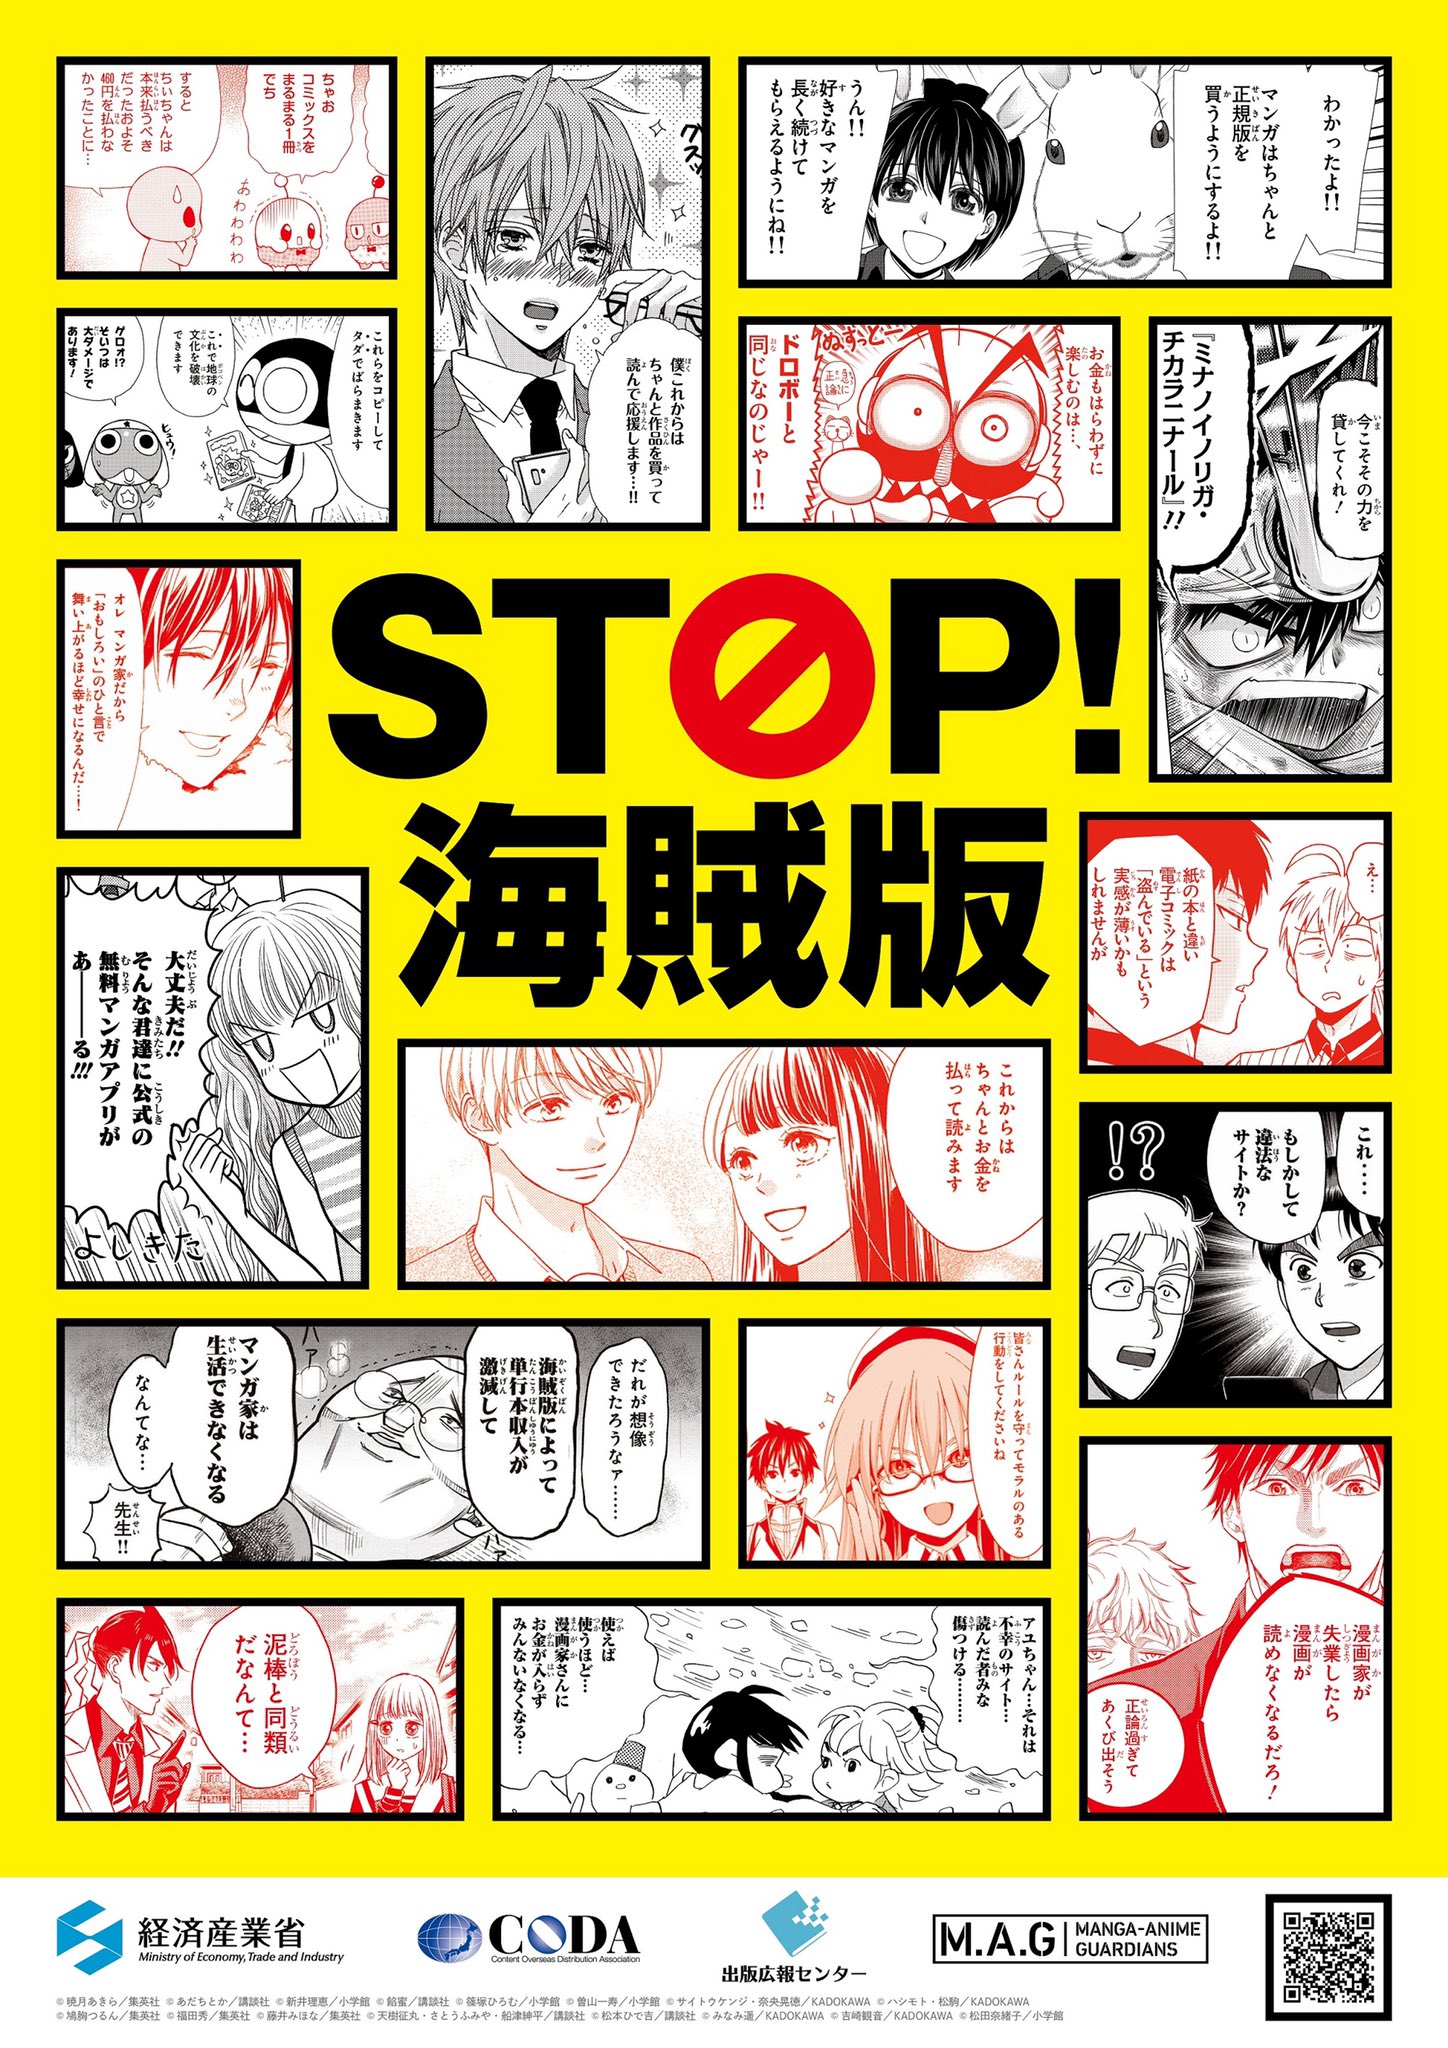 STOP! PIRACY (ES) manga